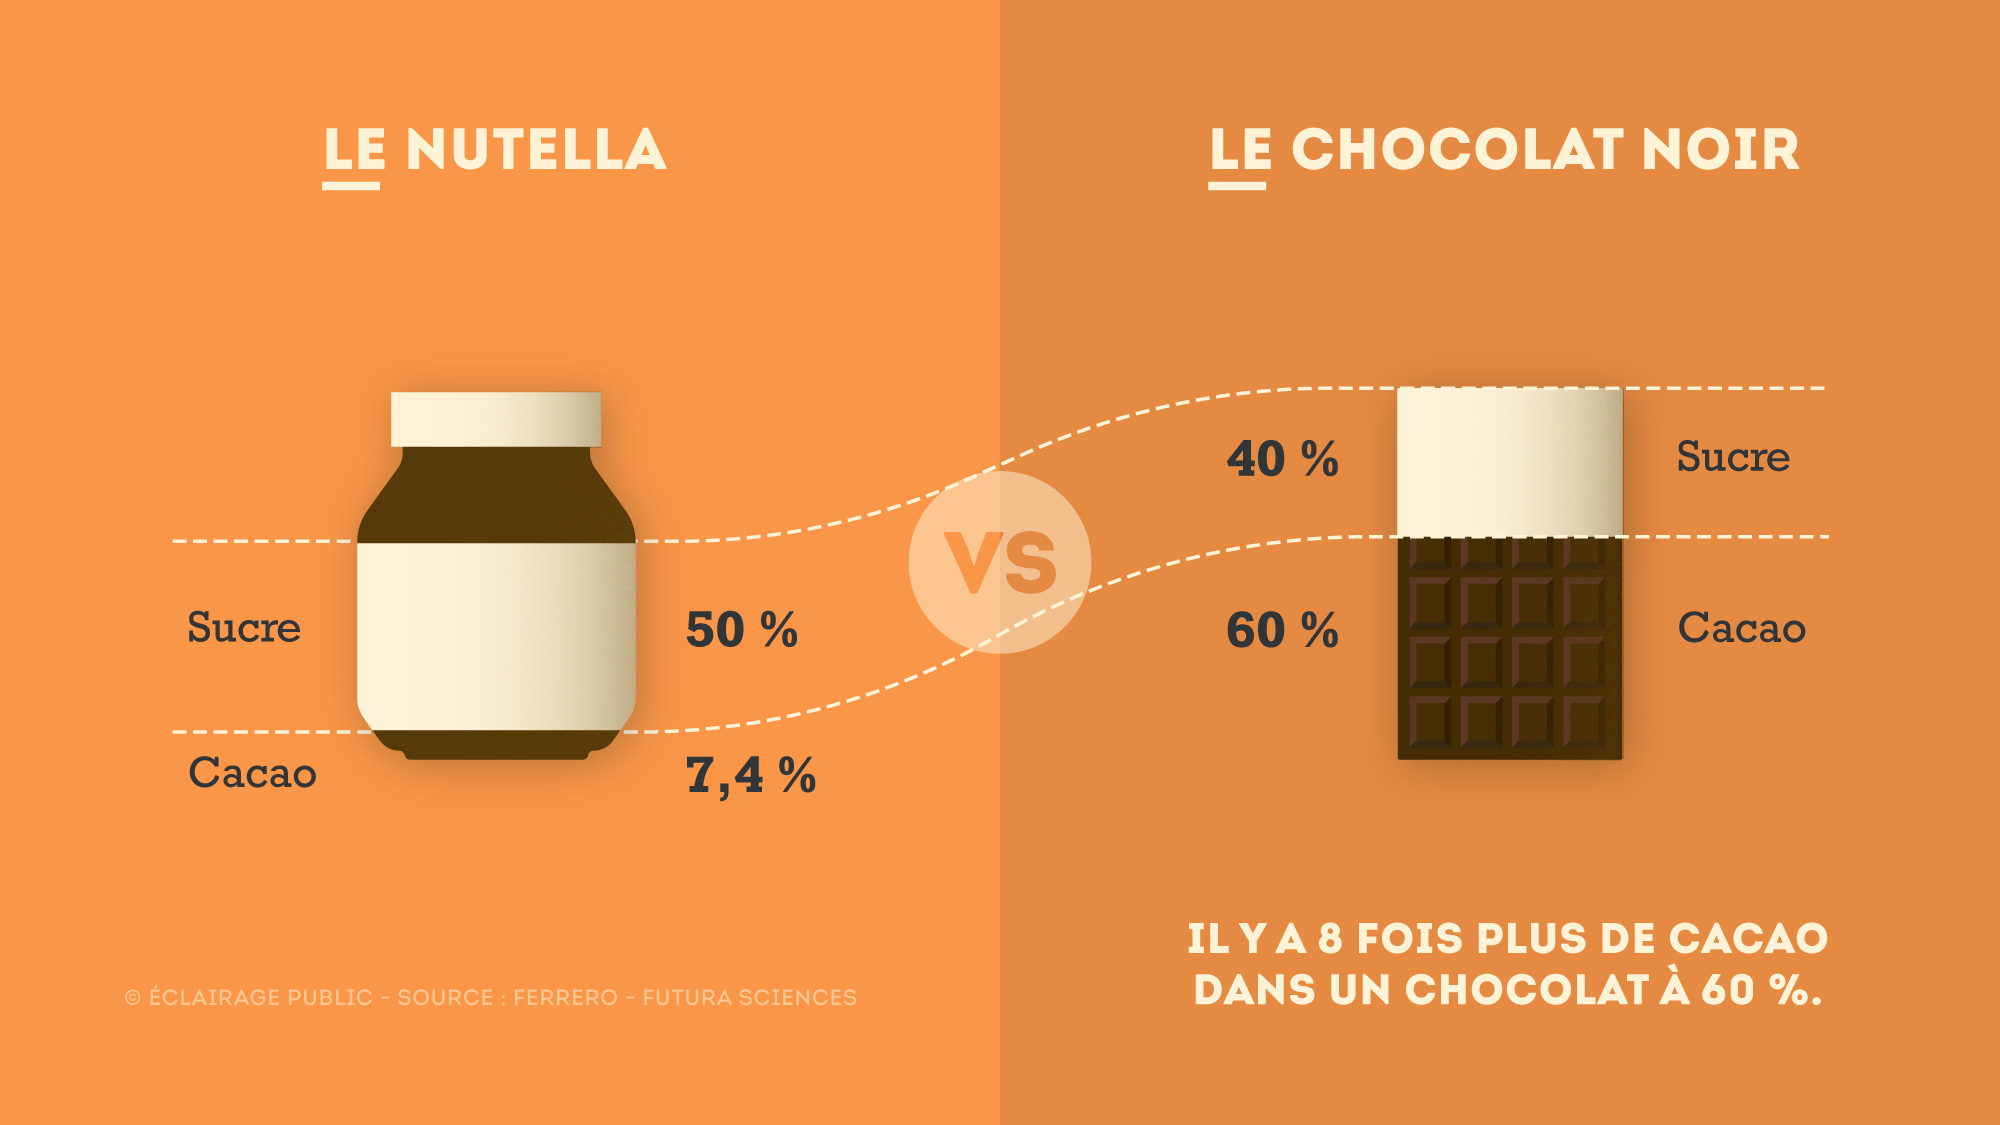 Nutella-VS-Chocolat-Noir-Infographie-ECLAIRAGE-PUBLIC-2000